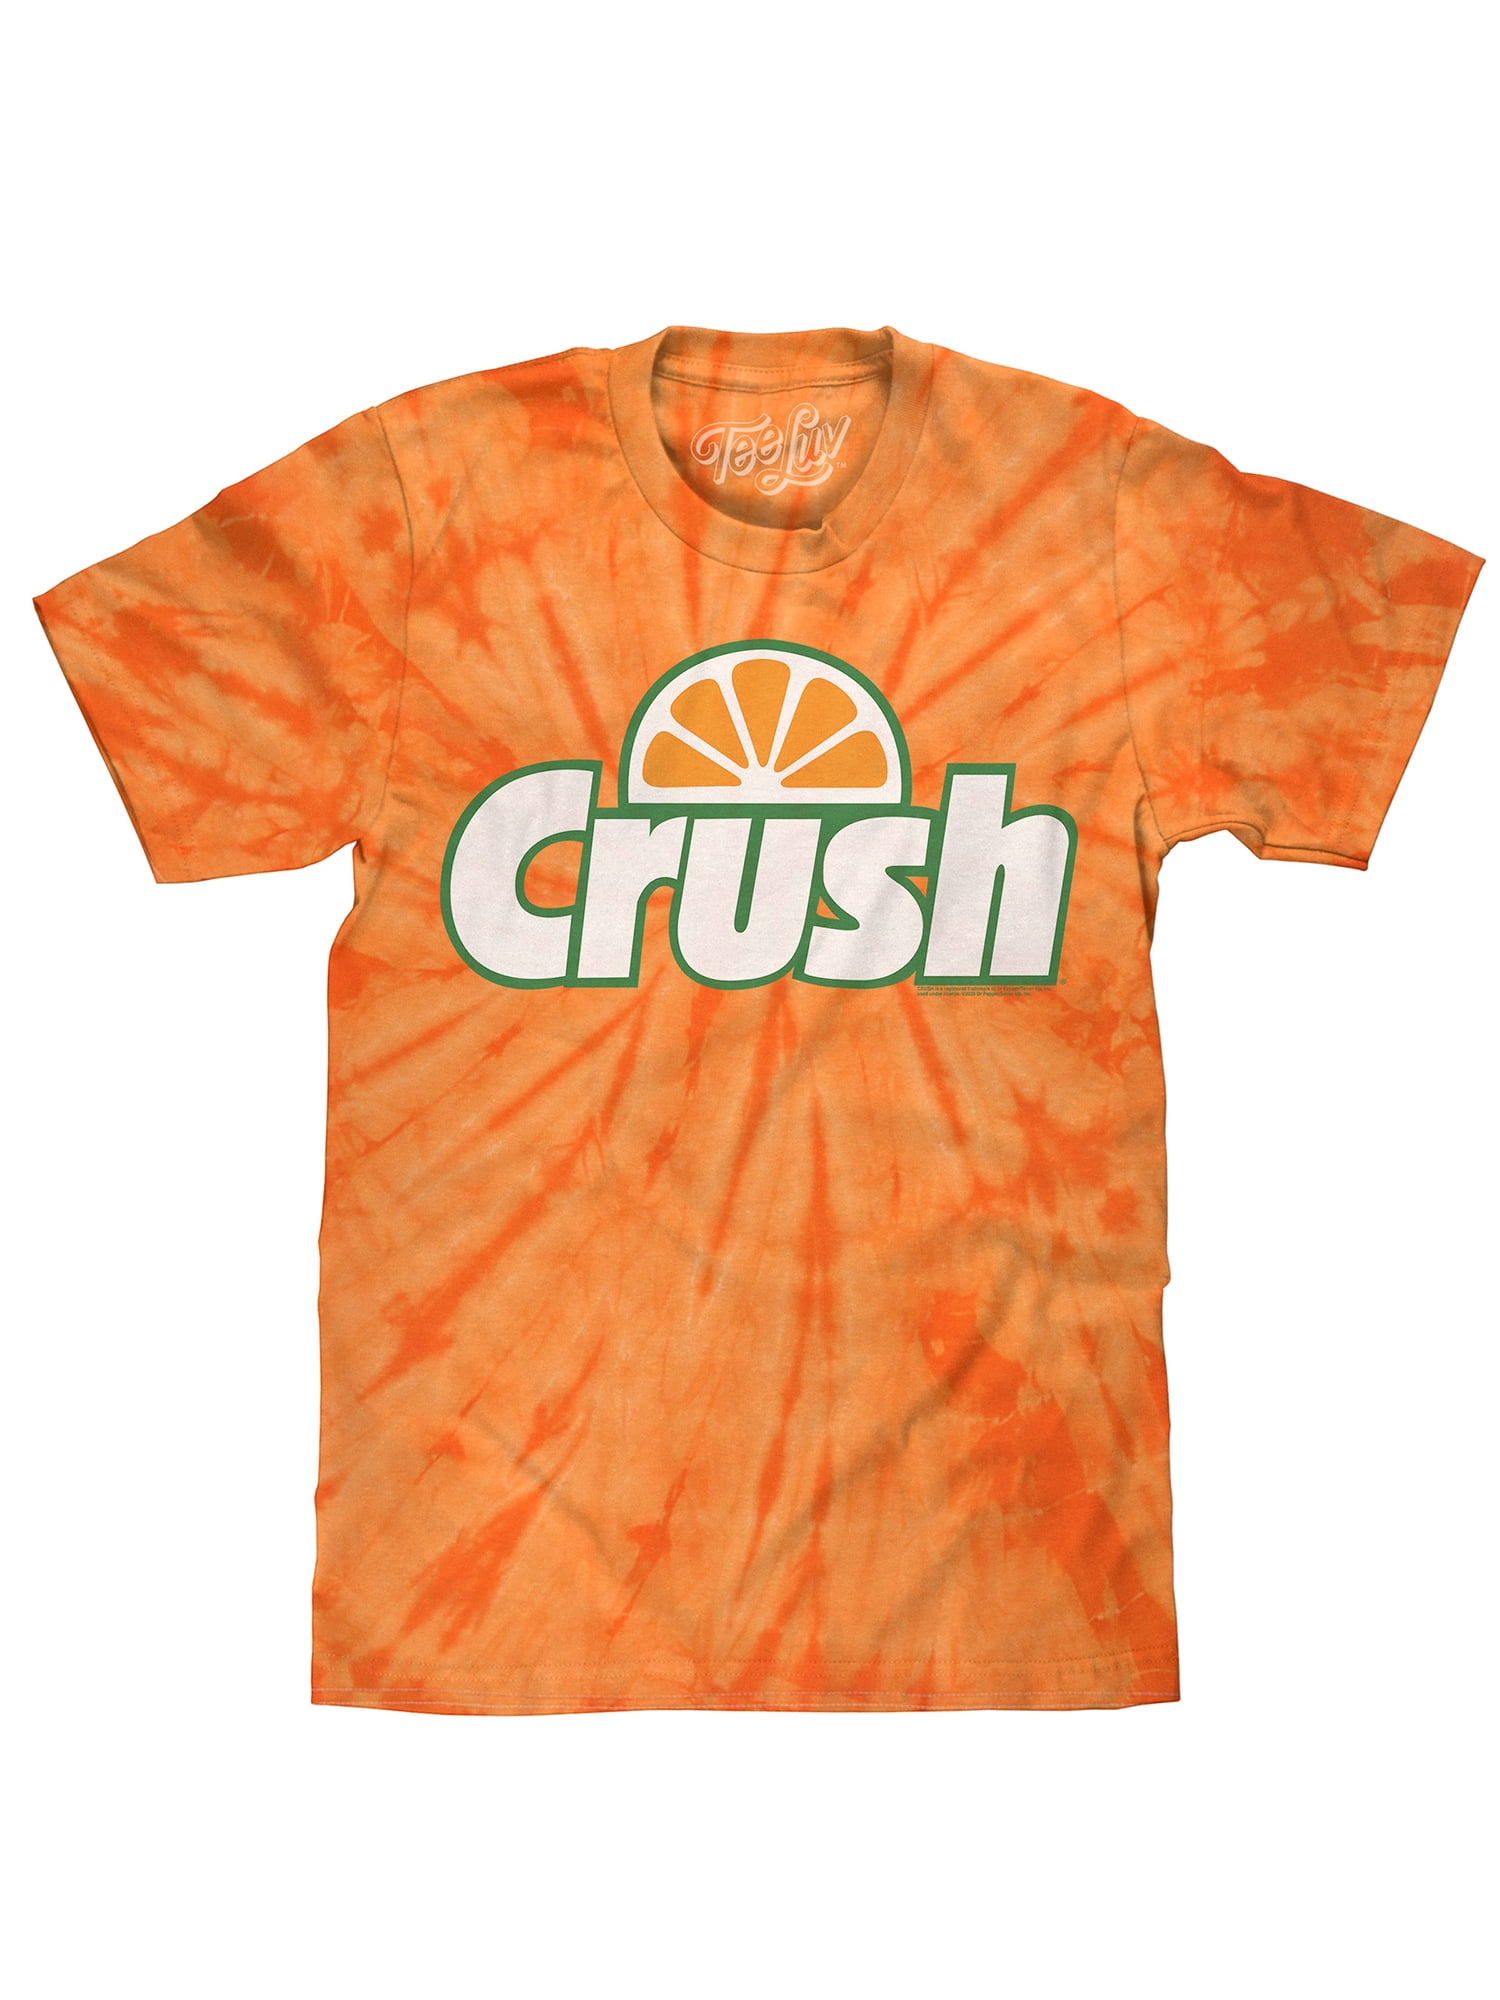 crush everything t shirt